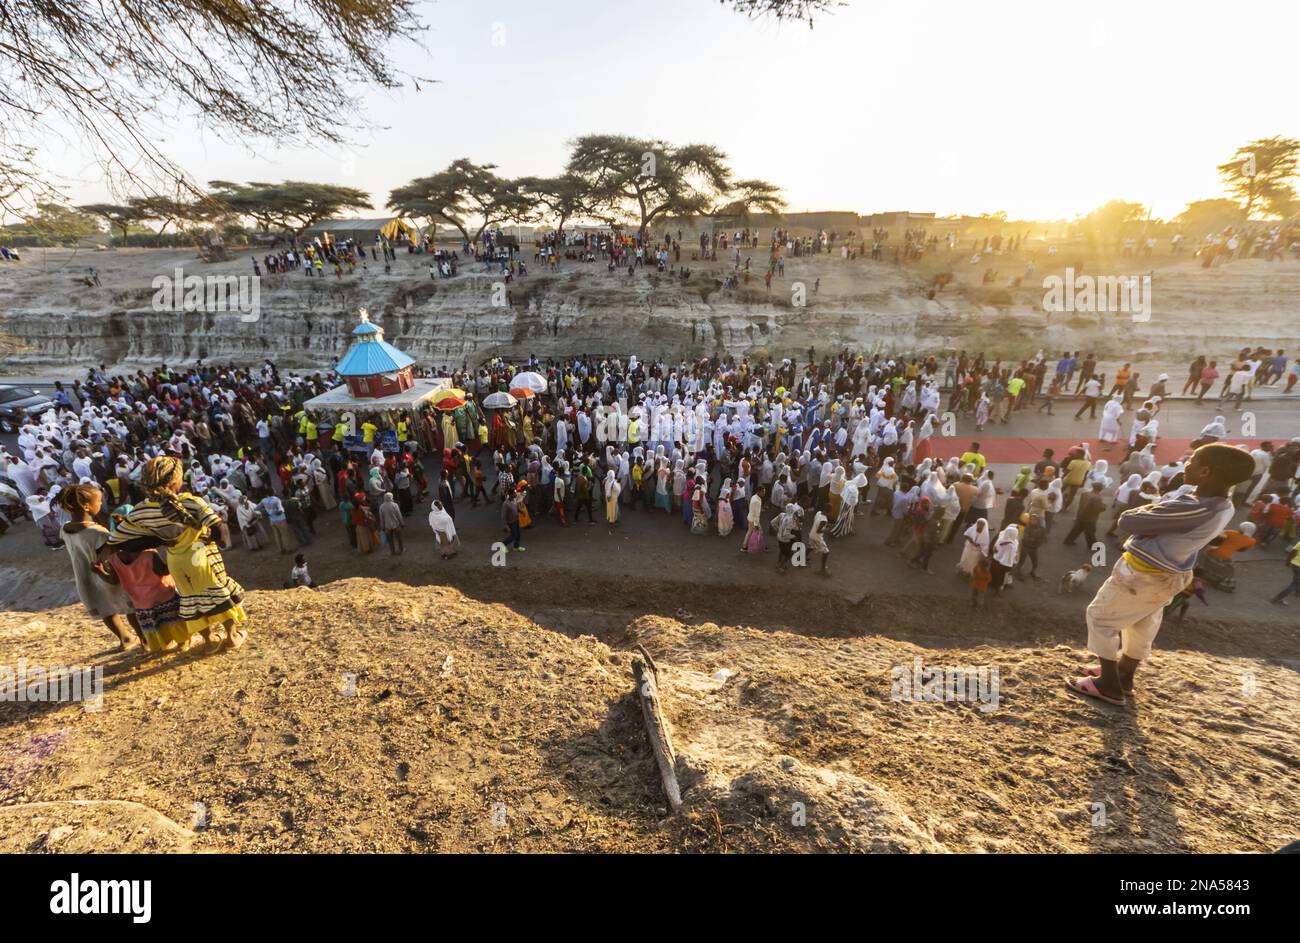 Persone in una processione Timkat durante la celebrazione ortodossa Tewahedo dell'Epifania, celebrata il 19 gennaio; Bulbula, Oromia, Etiopia Foto Stock